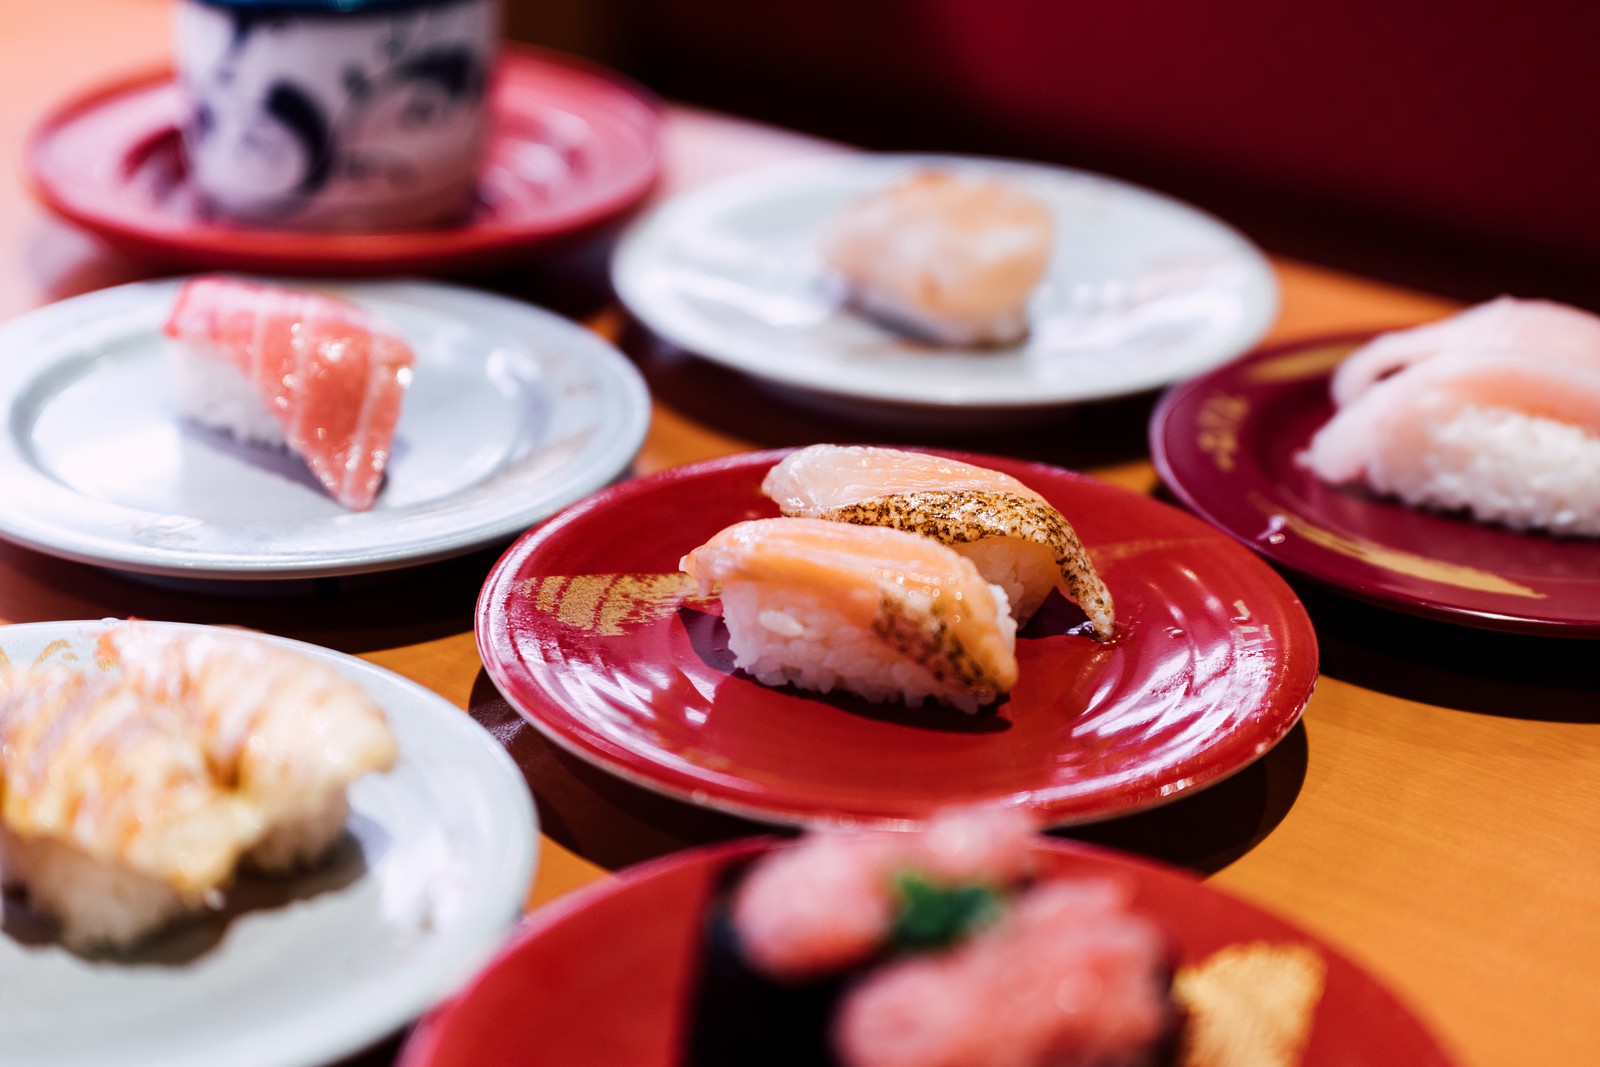 “北海道VS北陸”ご当地回転寿司チェーンの東京バトル勃発中! ４時間待ちも続出の安くてウマい地方チェーン最強寿司はどっち!?